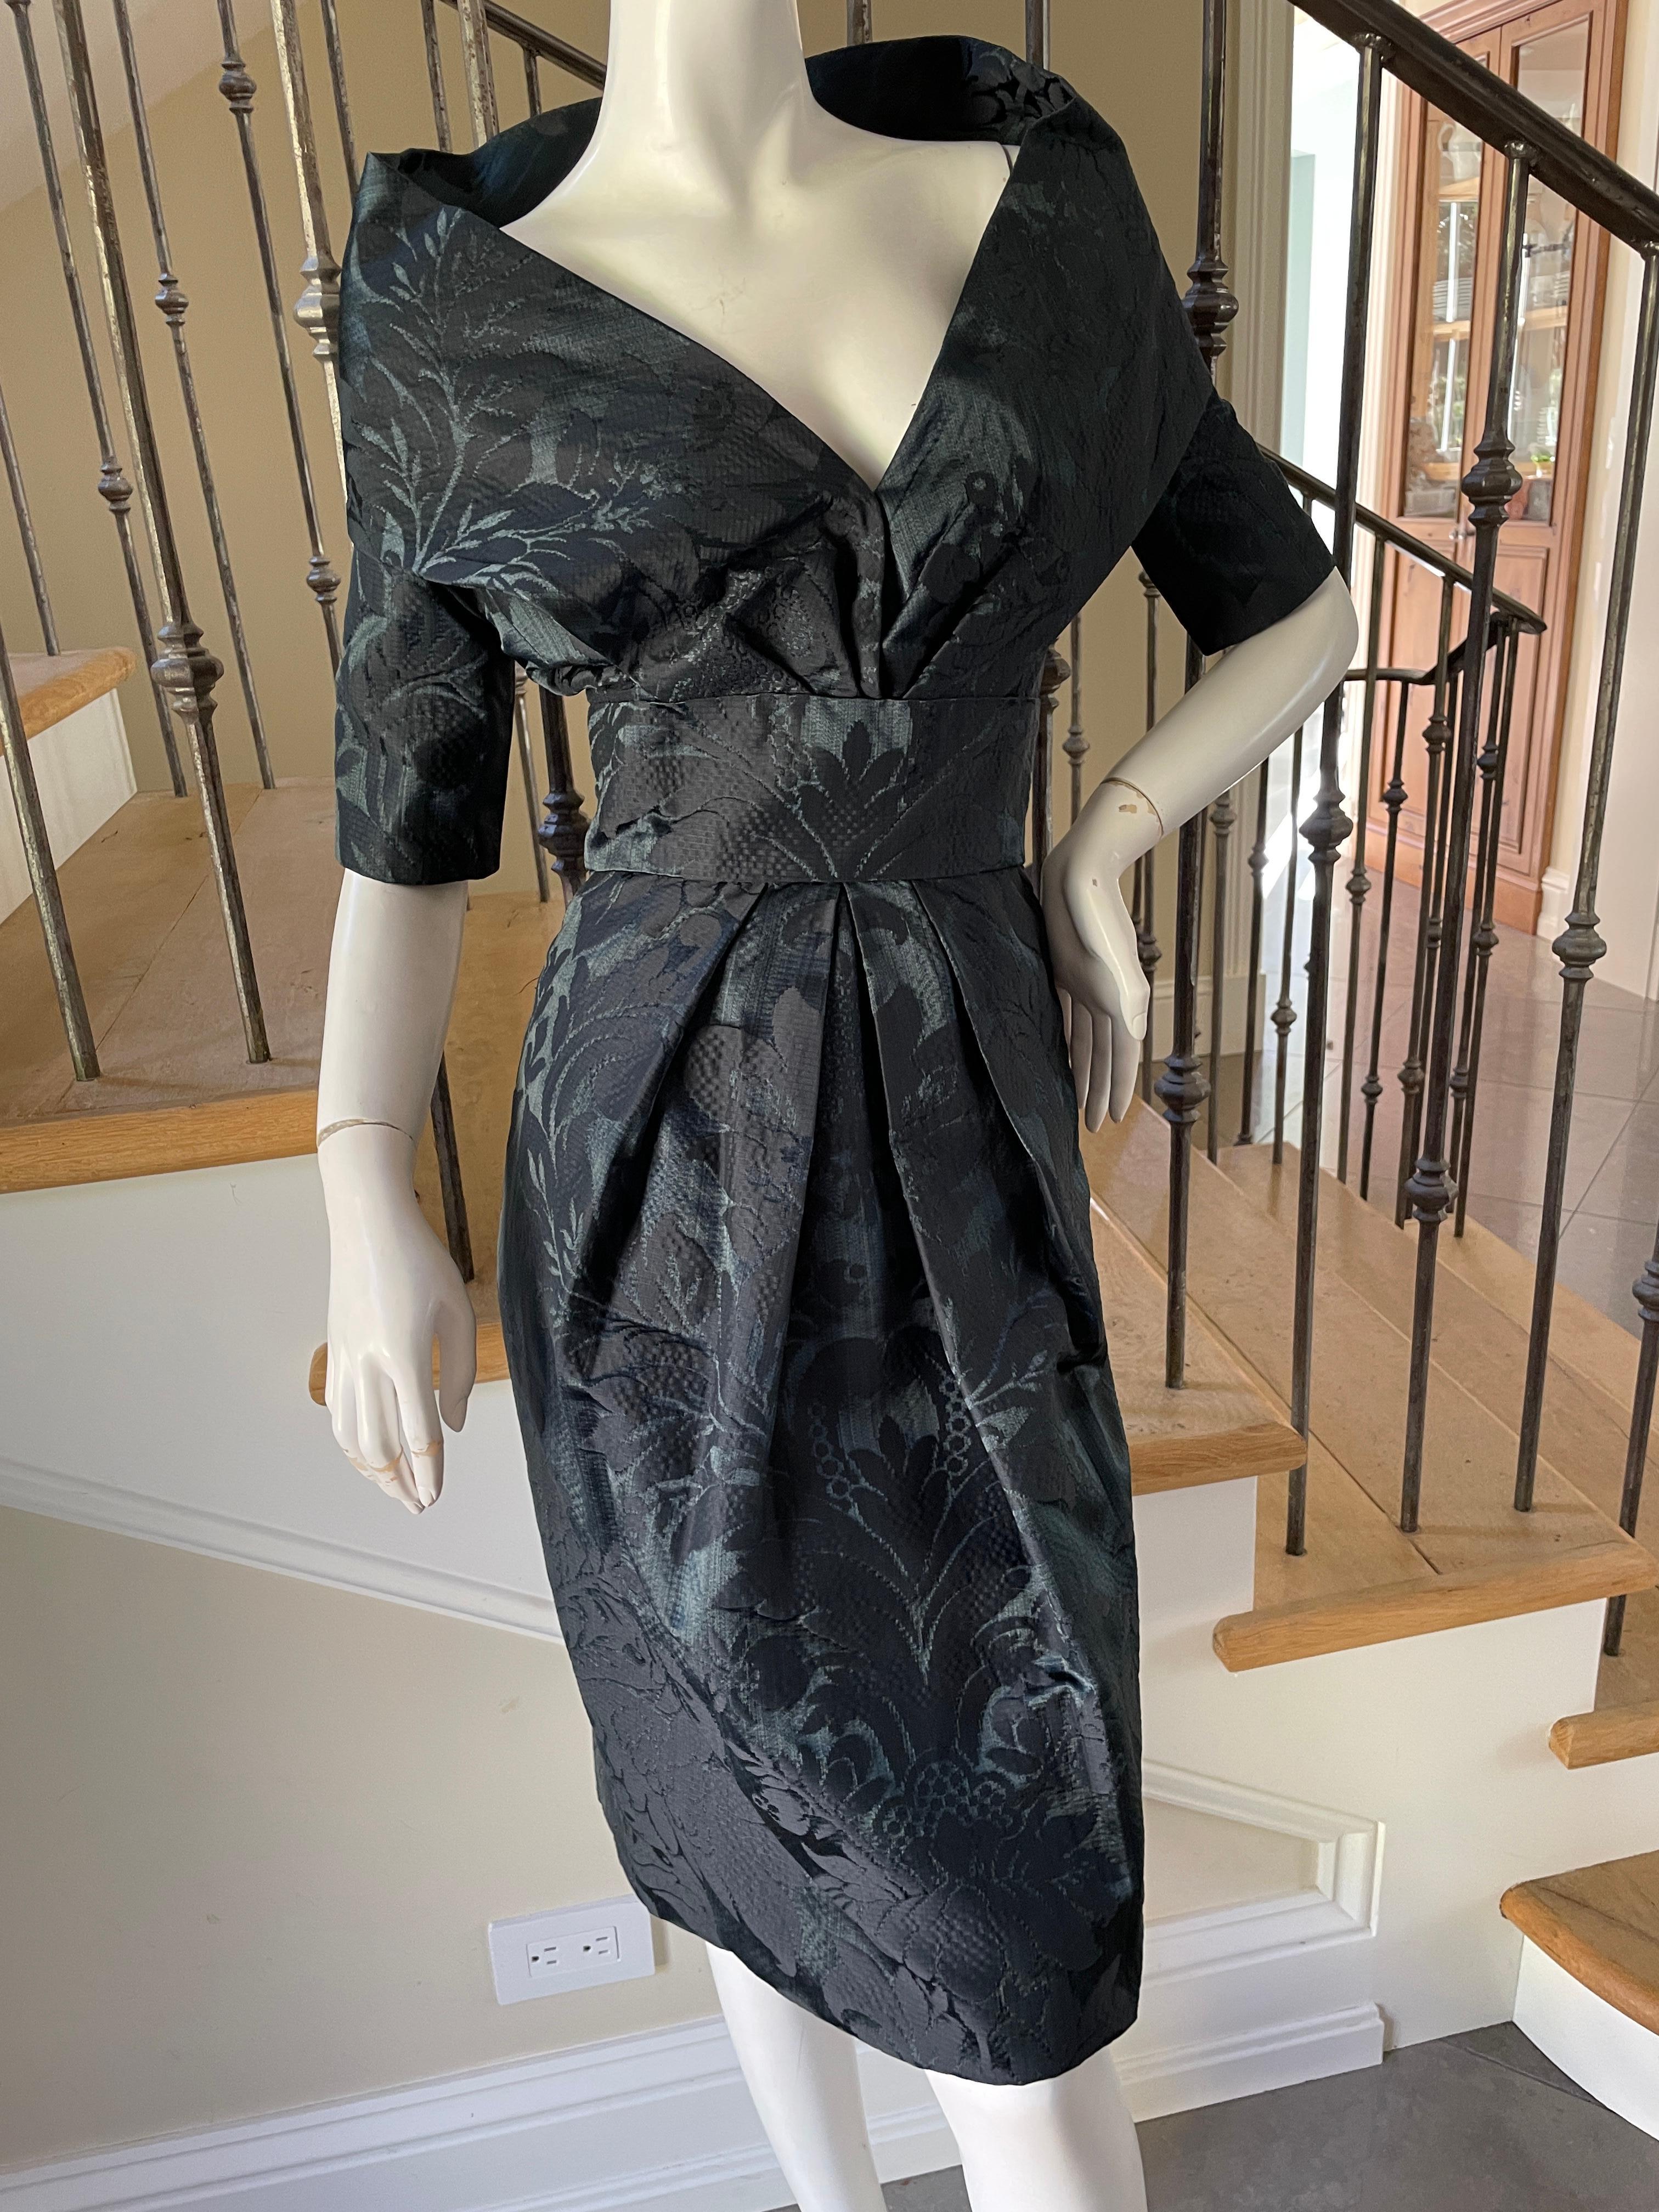 Women's Oscar de la Renta Vintage Teal & Black Jacquard Cocktail Dress w Portrait Collar For Sale